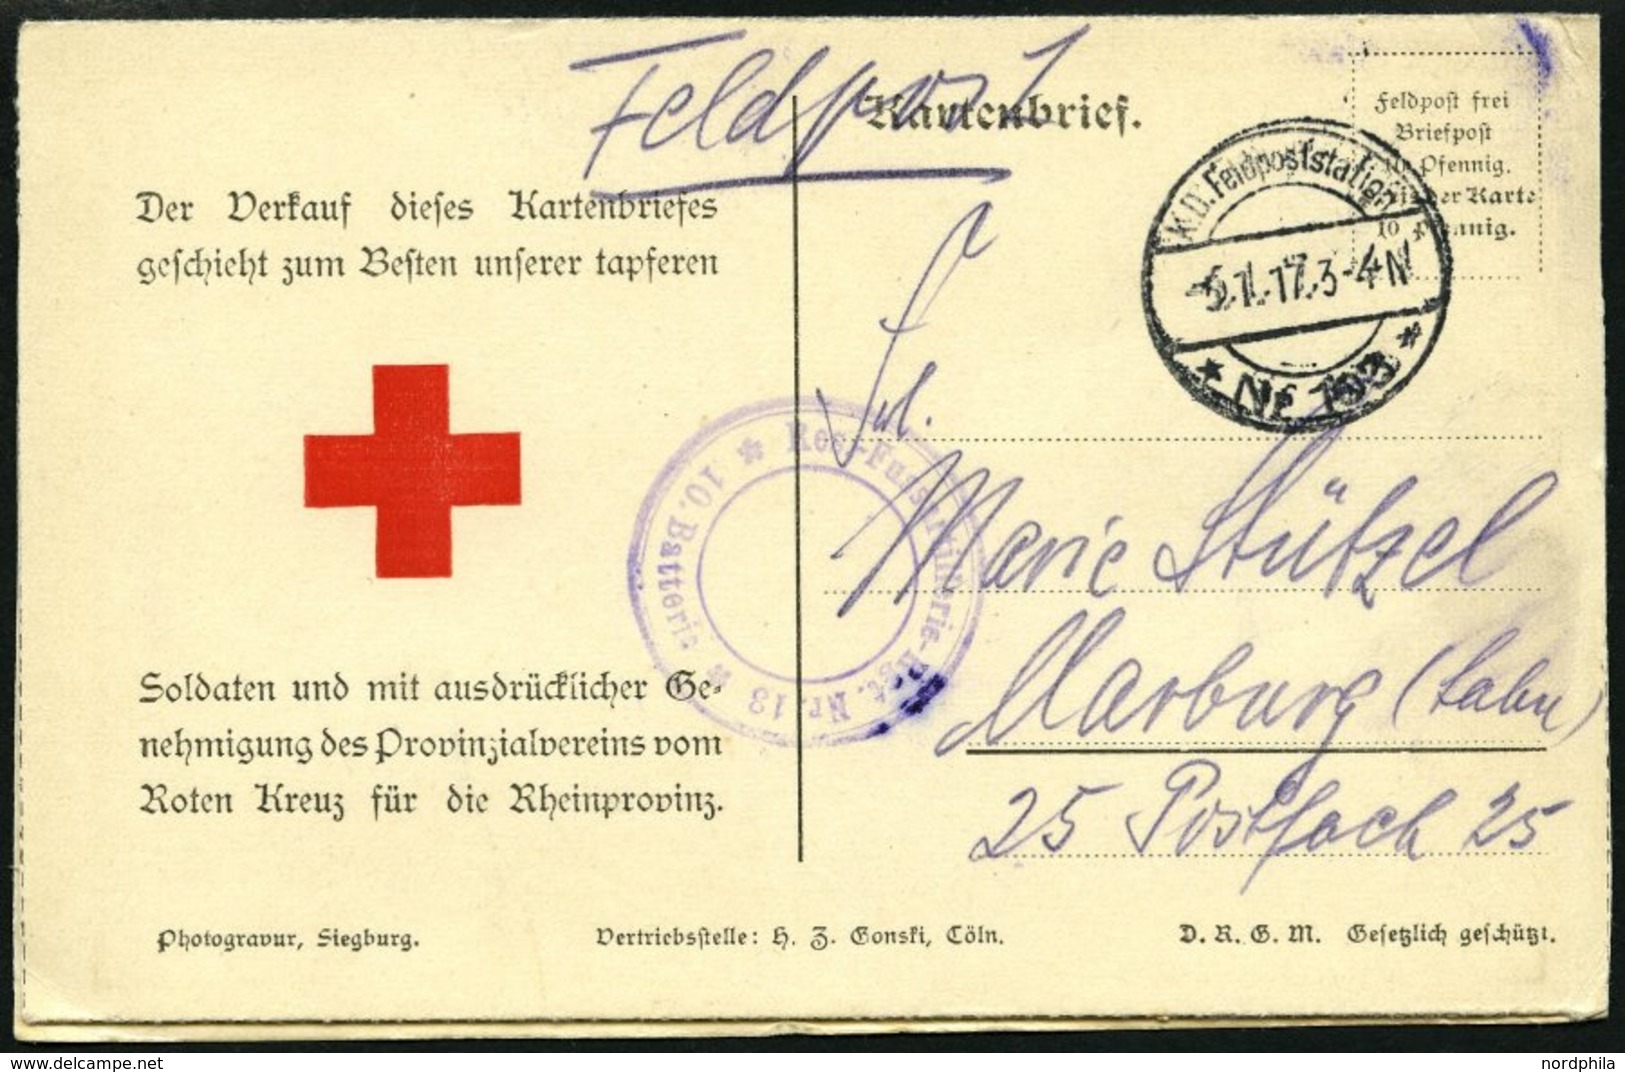 FELDPOST I.WK 1917, Feldpost-Kartenbrief, Feldpost-Station No. 103, Aufdruckkarte Zum Besten Des Roten Kreuzes Der Rhein - Oblitérés